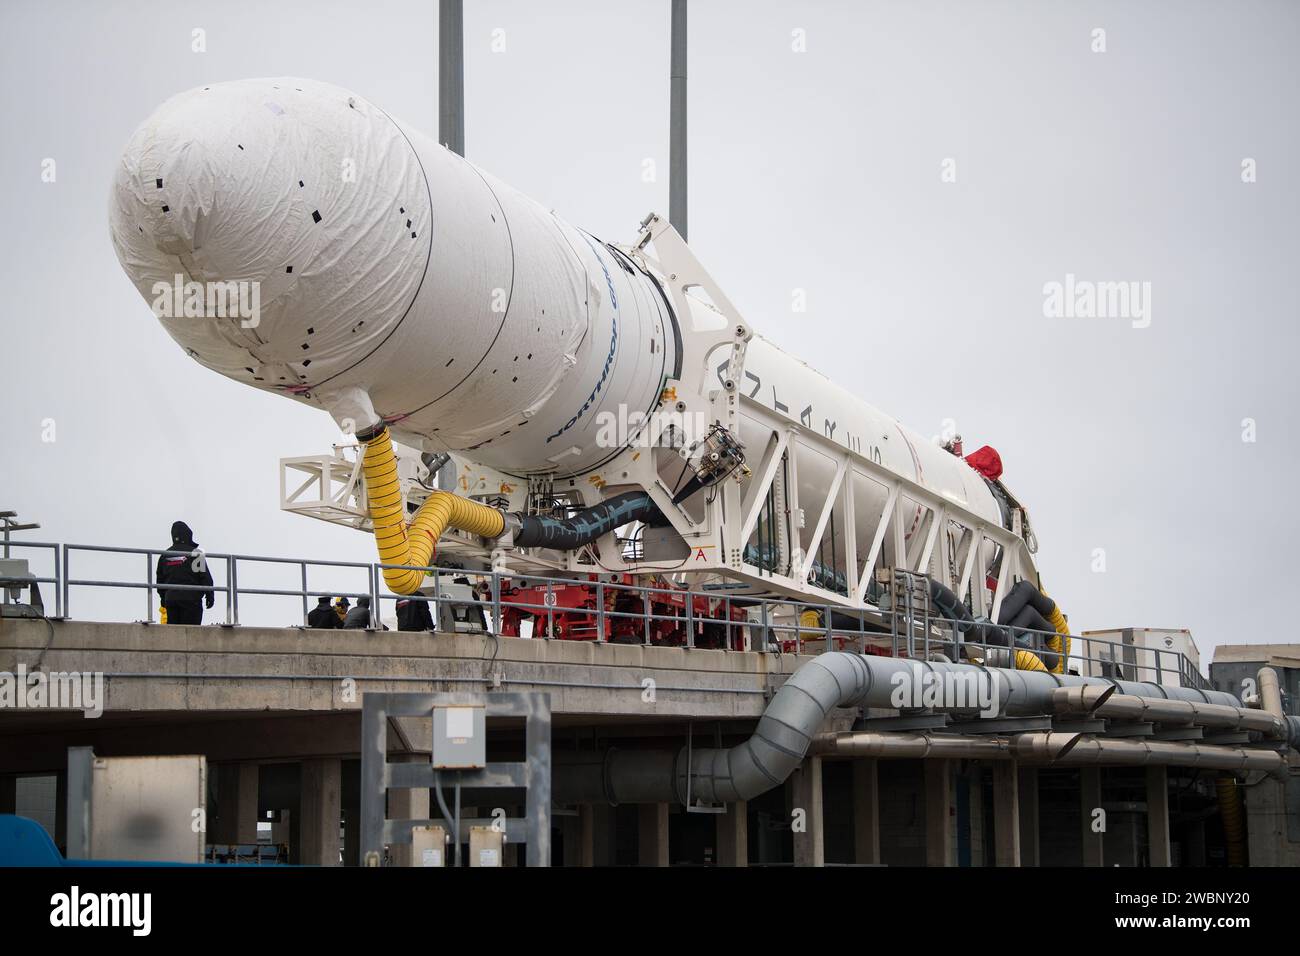 Un razzo Northrop Grumman Antares arriva al lancio Pad-0A, mercoledì 5 febbraio 2020, presso la Wallops Flight Facility della NASA in Virginia. La tredicesima missione di rifornimento di carichi stipulata da Northrop Grumman con la NASA alla stazione spaziale Internazionale consegnerà più di 7.500 chili di scienza e ricerca, forniture per l'equipaggio e hardware per veicoli al laboratorio orbitale e al suo equipaggio. La navicella spaziale CRS-13 Cygnus prende il nome dal primo astronauta afroamericano, il maggiore Robert Henry Lawrence Jr., ed è prevista per il lancio alle 17:39 EST domenica 9 febbraio. Foto Stock